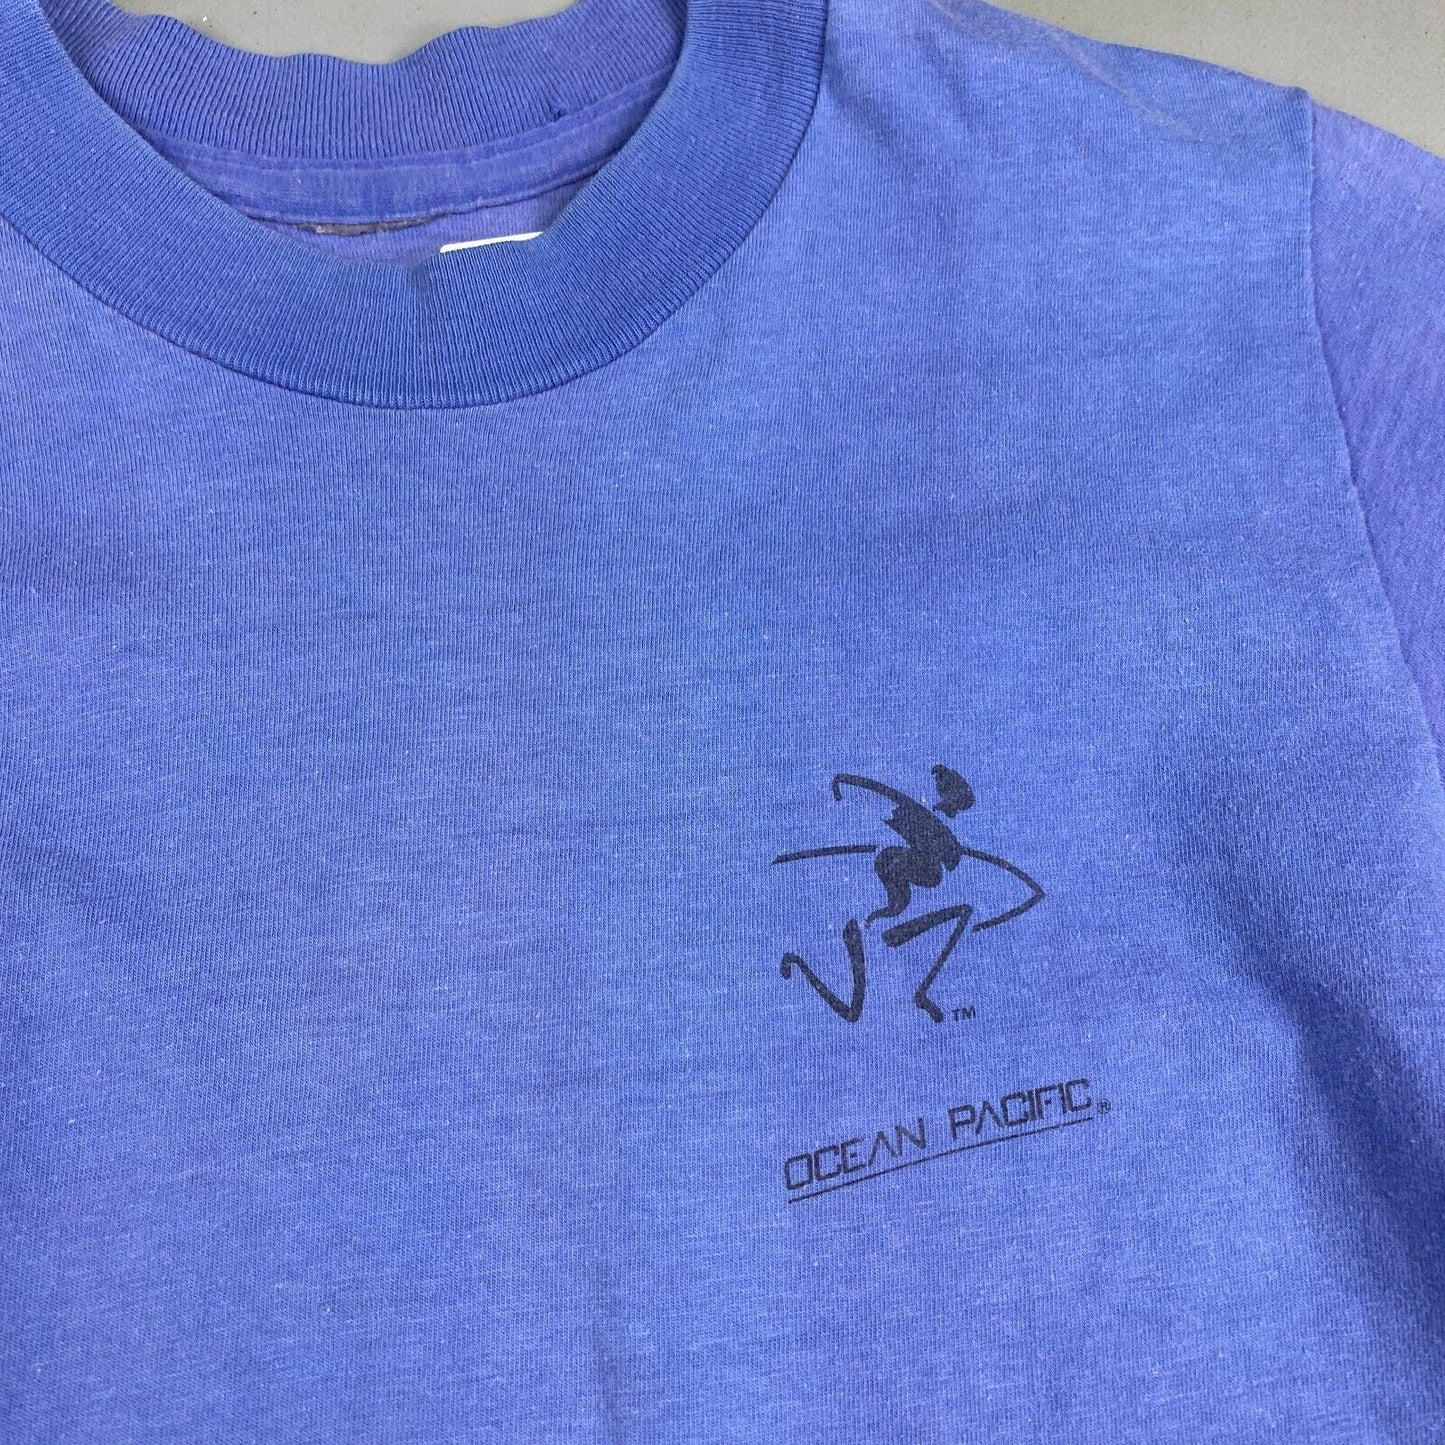 Vintage 90s Ocean Pacific Surfing Blue T-Shirt sz XS Men Adult